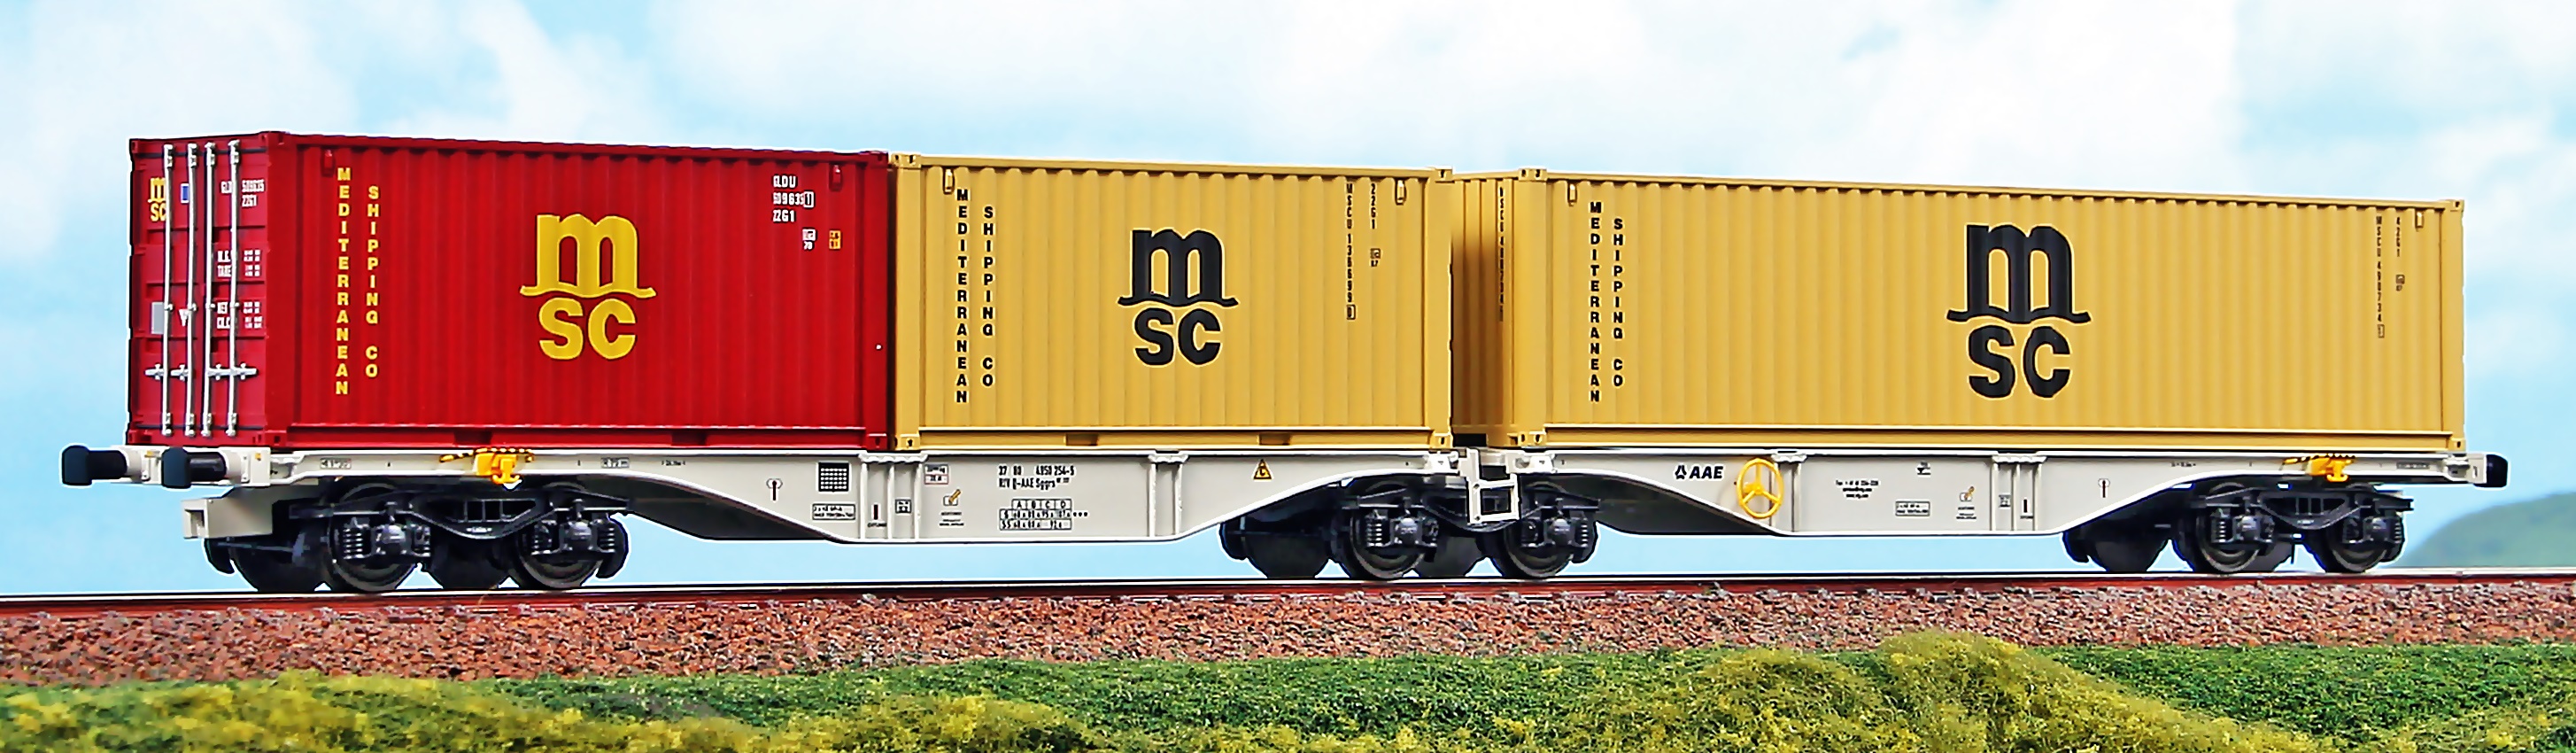 AAE Containertragwagen Ep5-6 Sggrs 80’, beladen mit 2x 20´ Containern MSC (jeweils 1x beige und 1x rot) und 1x 40´ Container MSC beige